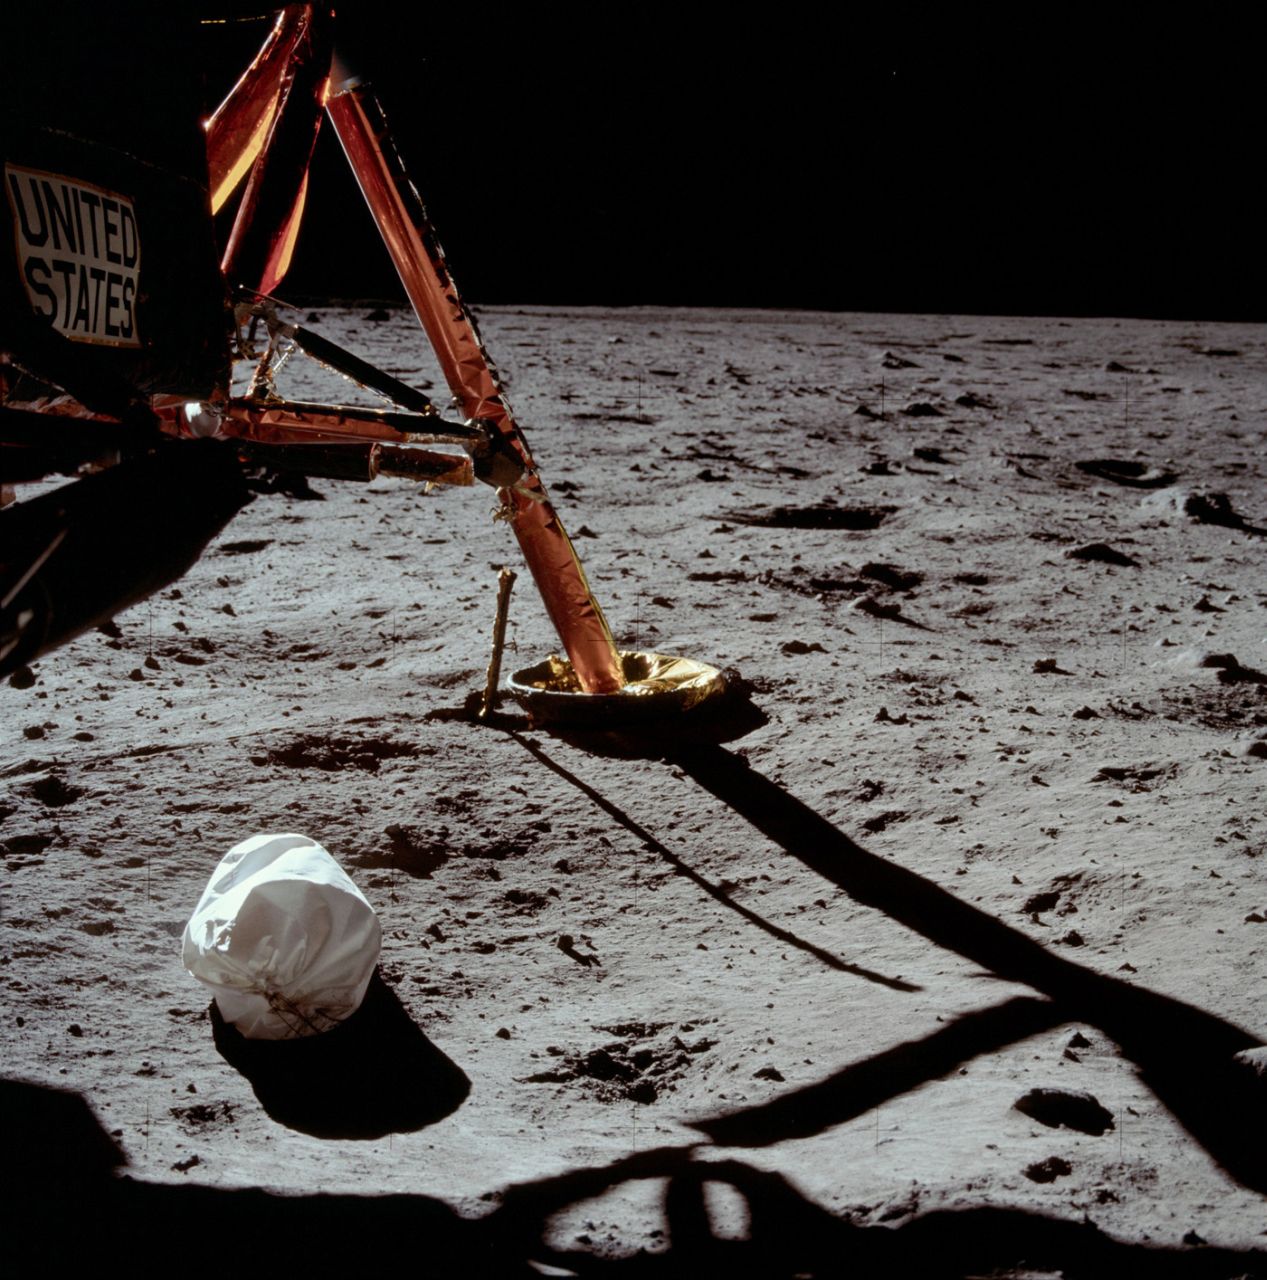 Kosmos, nauka, ciekawostki - odkrywamy tajemnice Księżyca